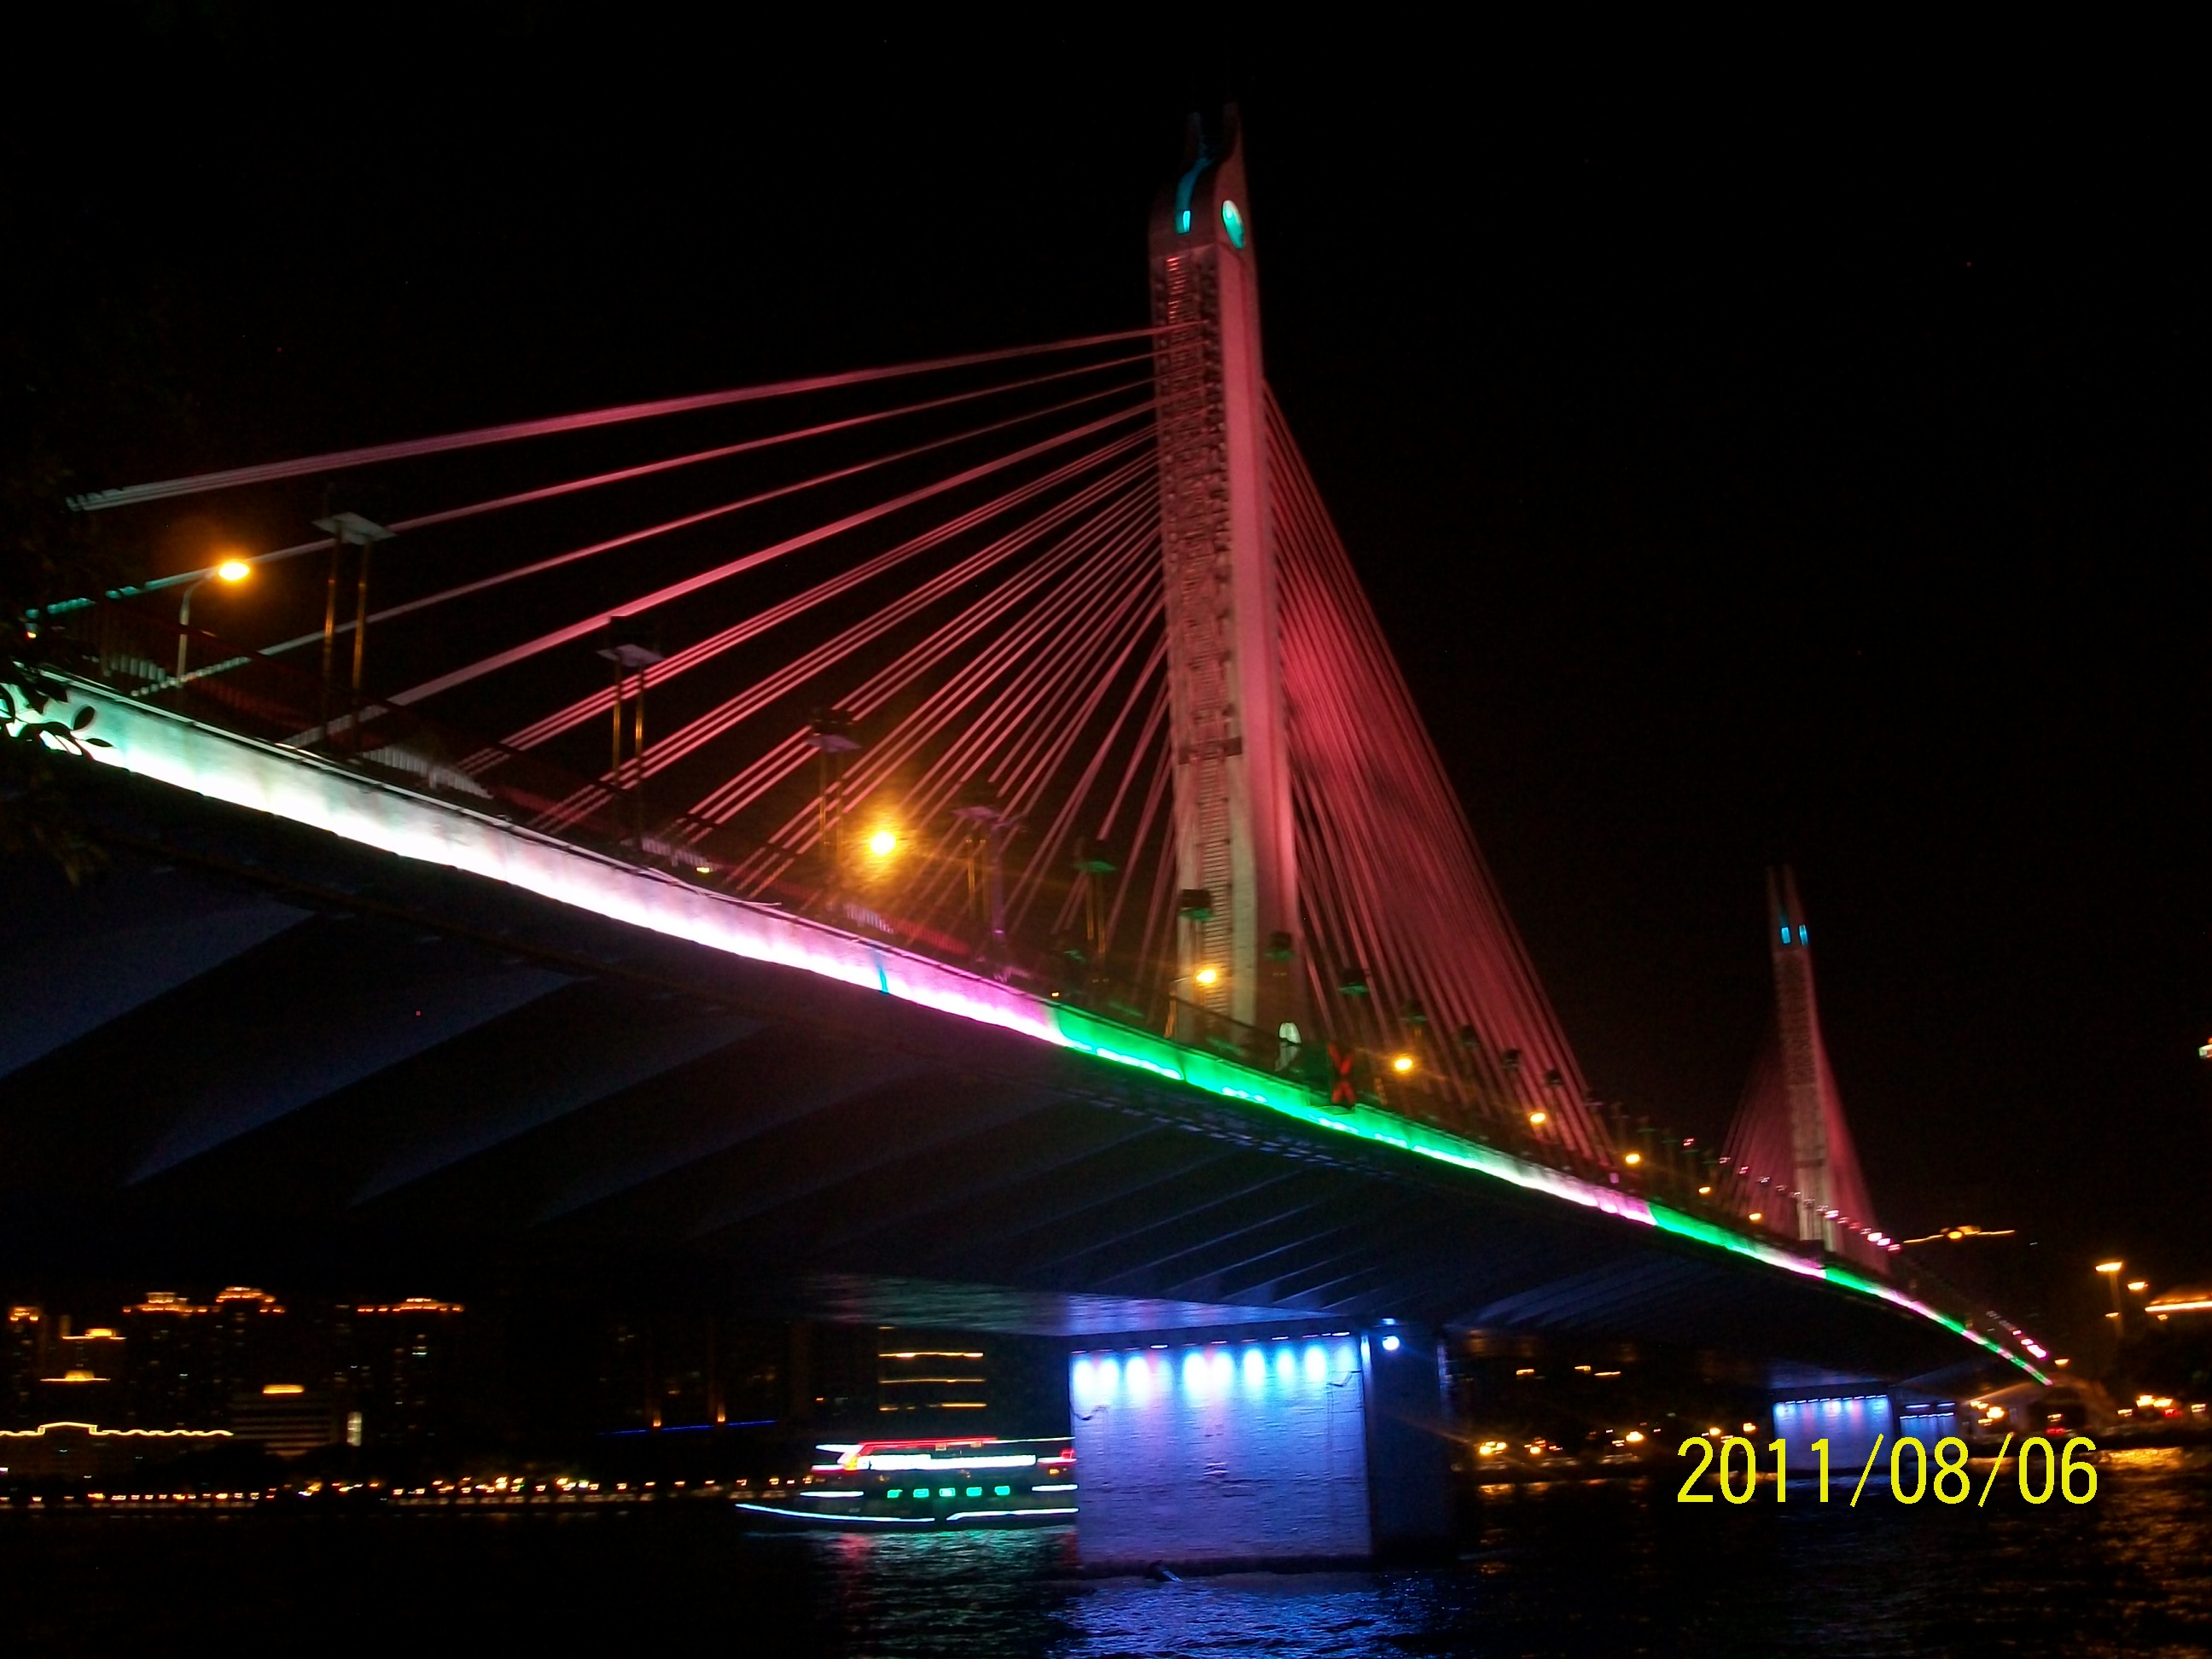 广州海印桥夜景692 / 作者:完美夏天 / 帖子ID:873